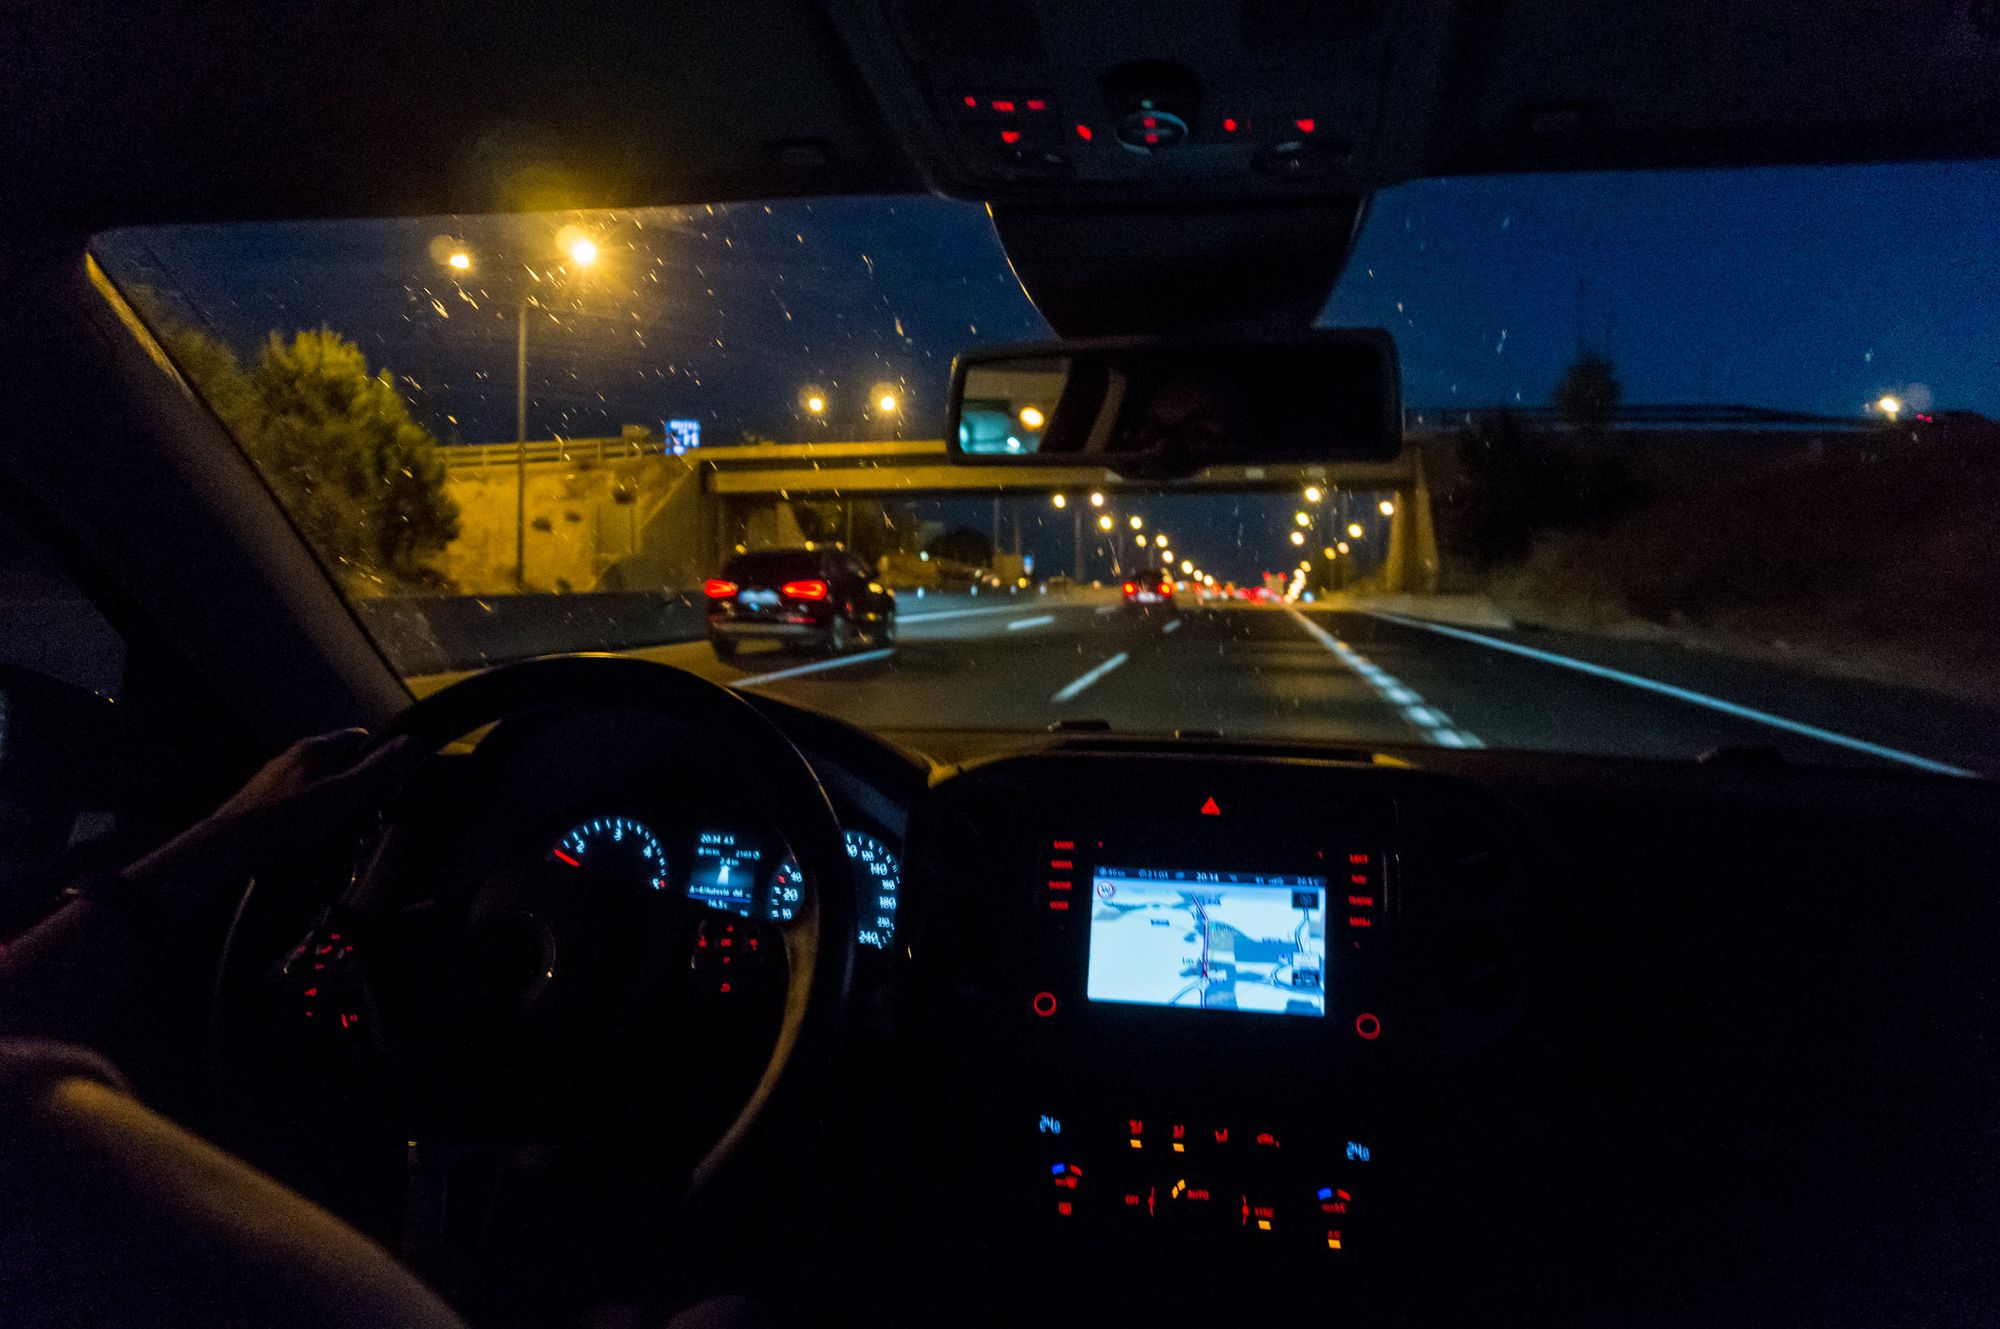 Conducción nocturna y visión - Consejos que debes conocer